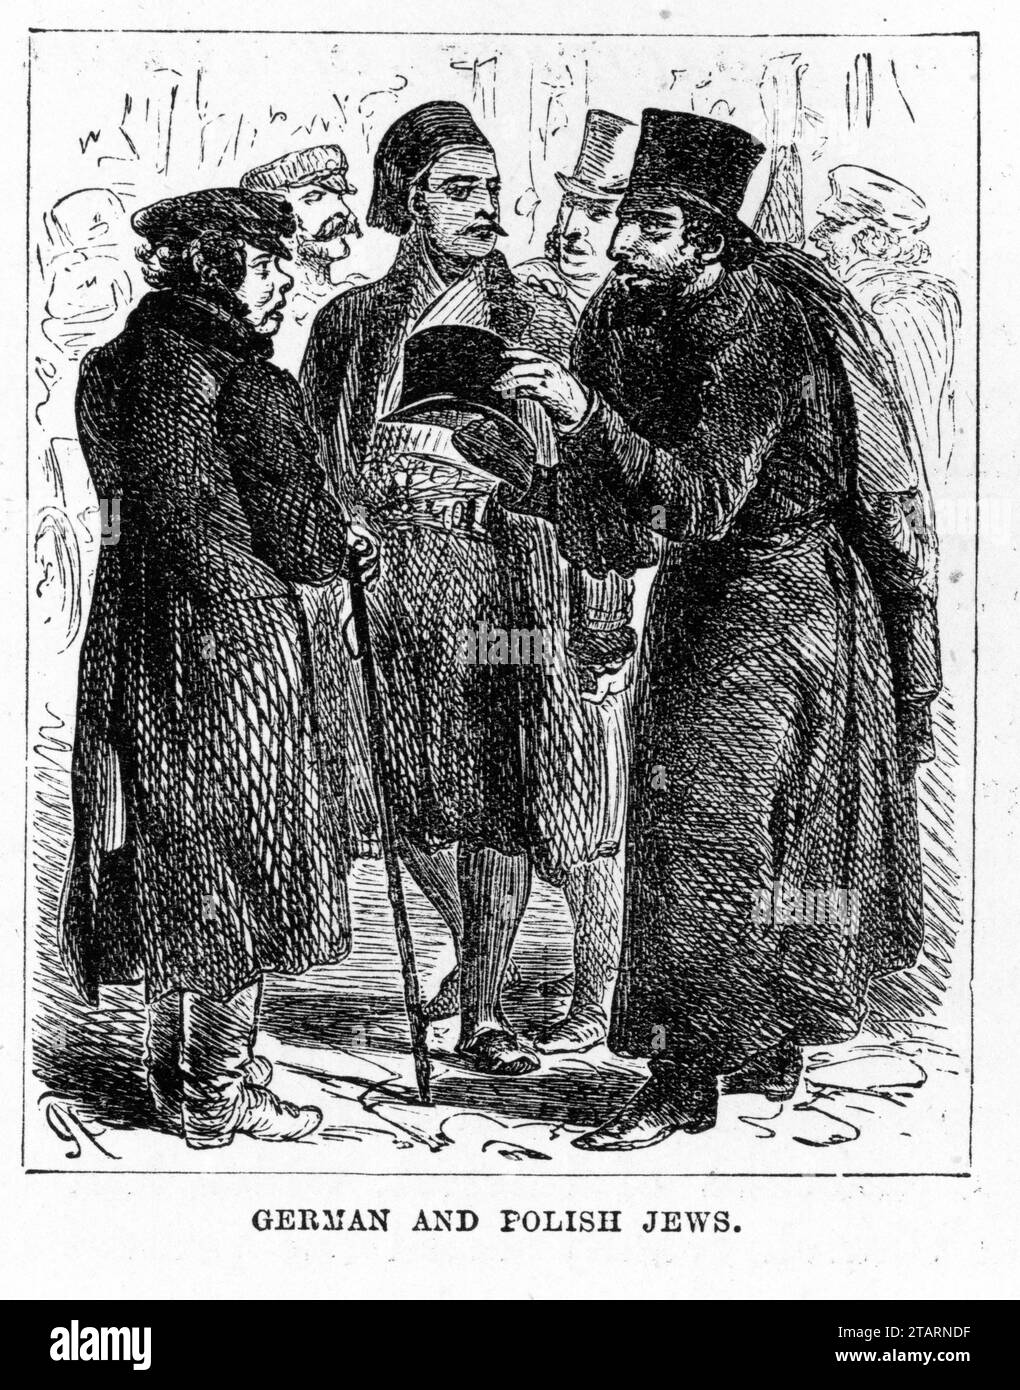 Ritratto inciso di ebrei tedeschi e polacchi in costumi tradizionali. Pubblicato intorno al 1887 Foto Stock